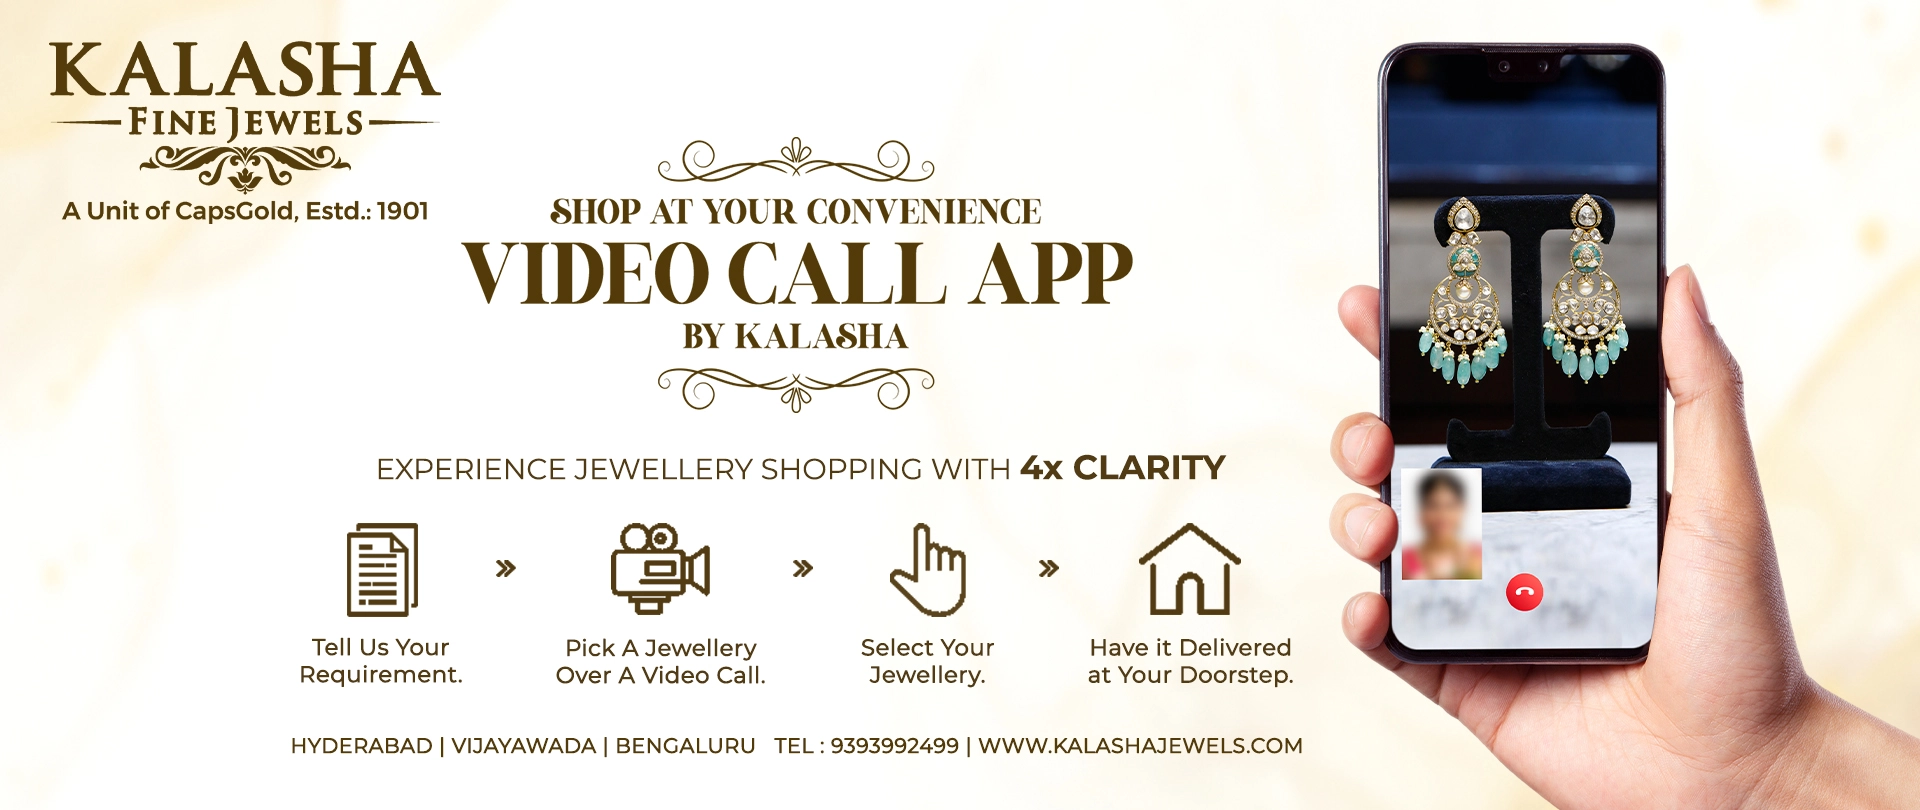 Kalasha Video call app